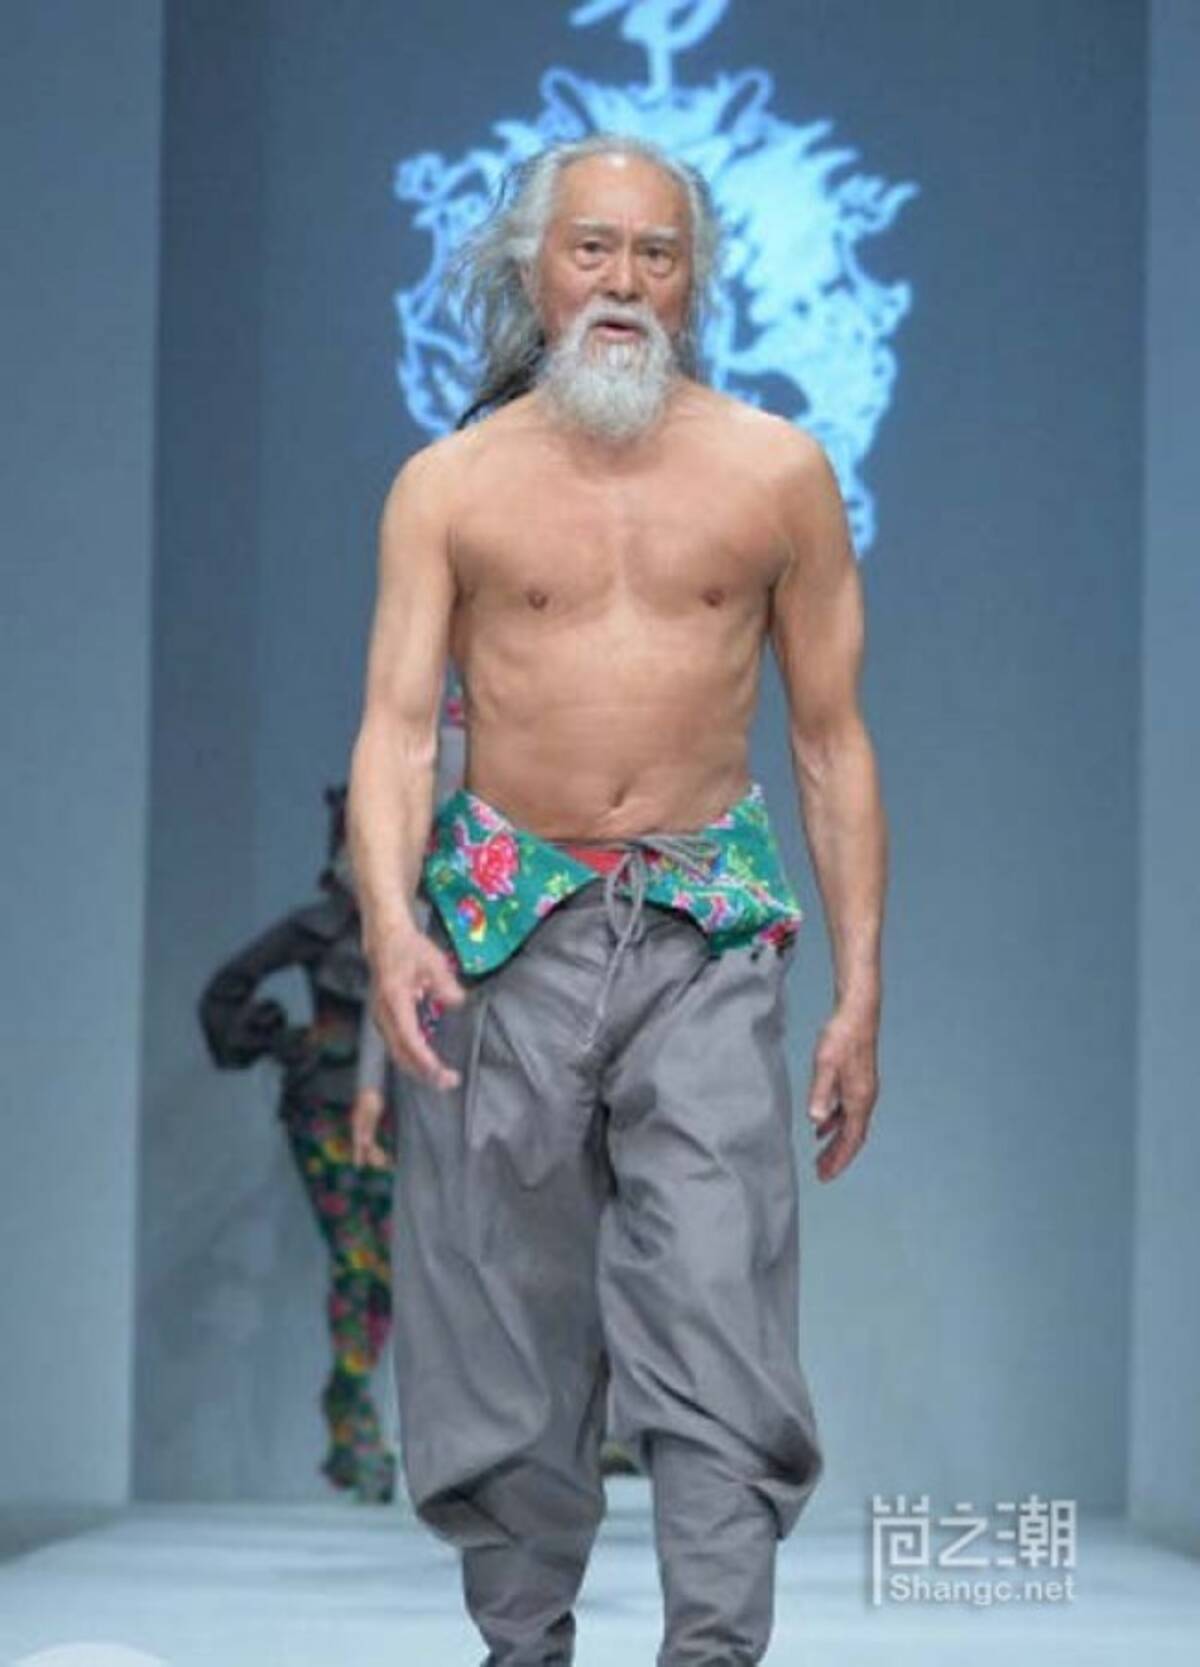 世界一ホットなおじいちゃん 80代男性モデルがランウェイでキメる 2016年10月19日 エキサイトニュース